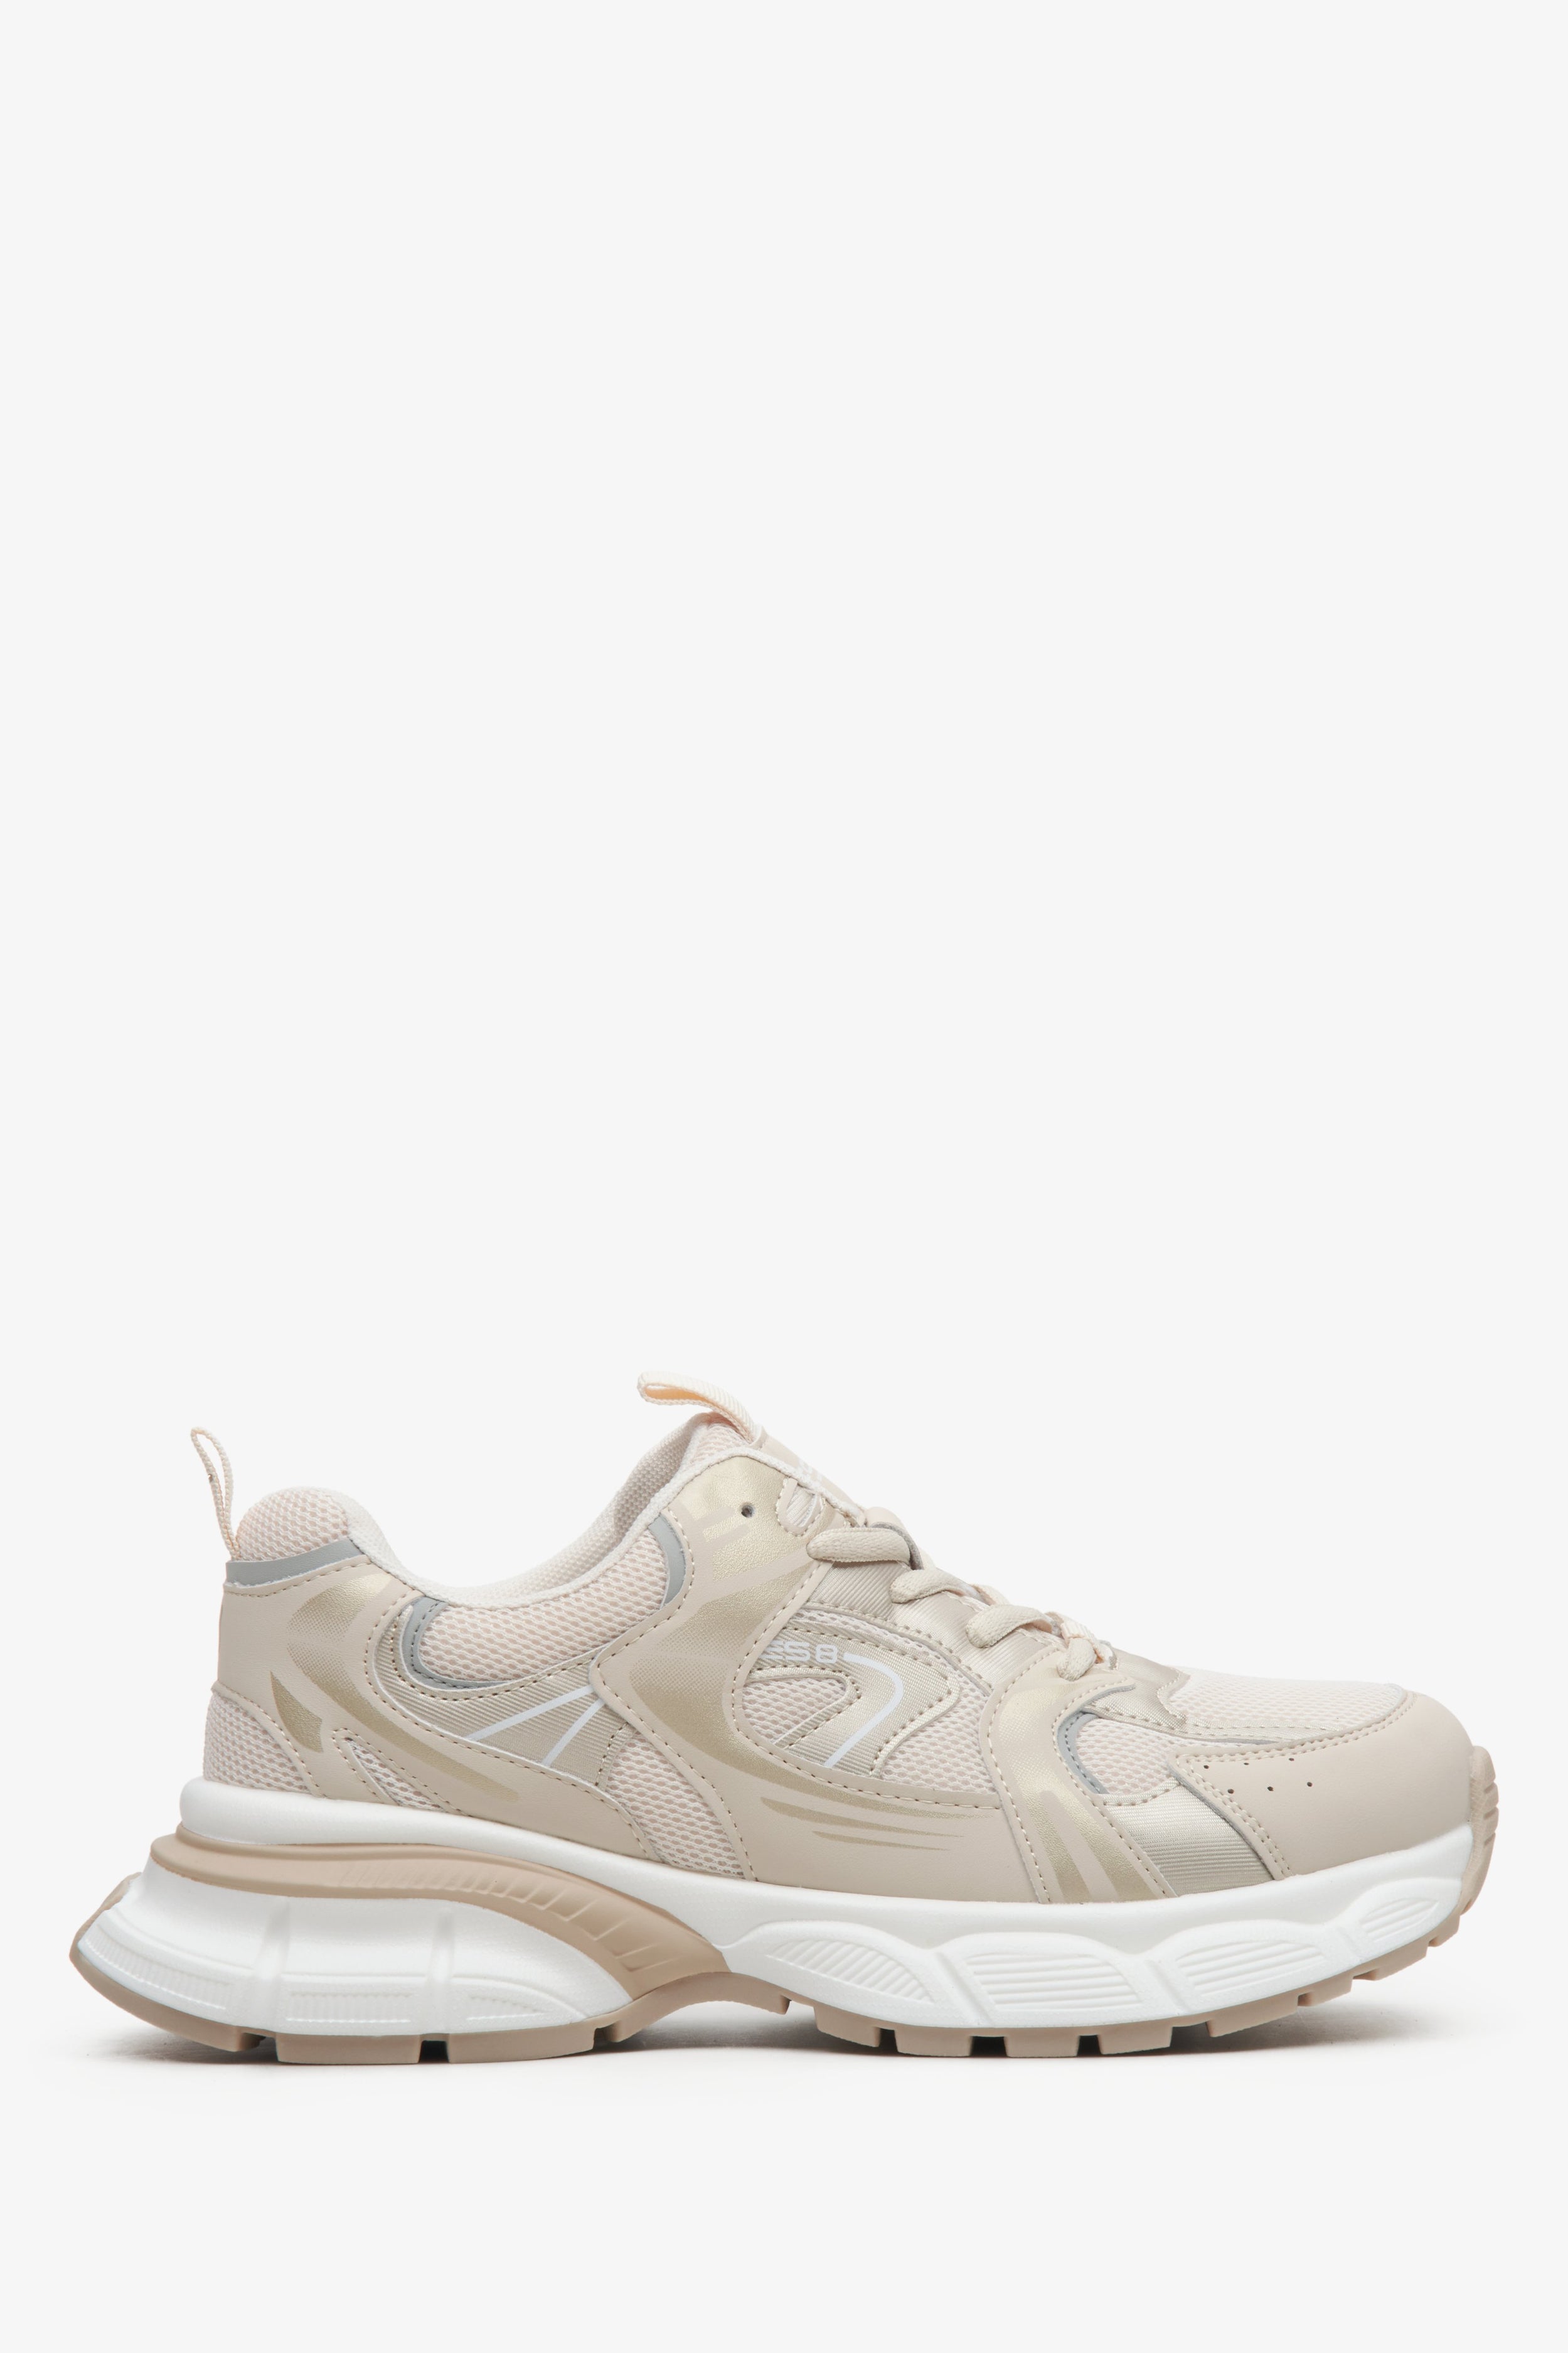 ES8: Beżowo-białe sneakersy damskie ze złotymi zdobieniami